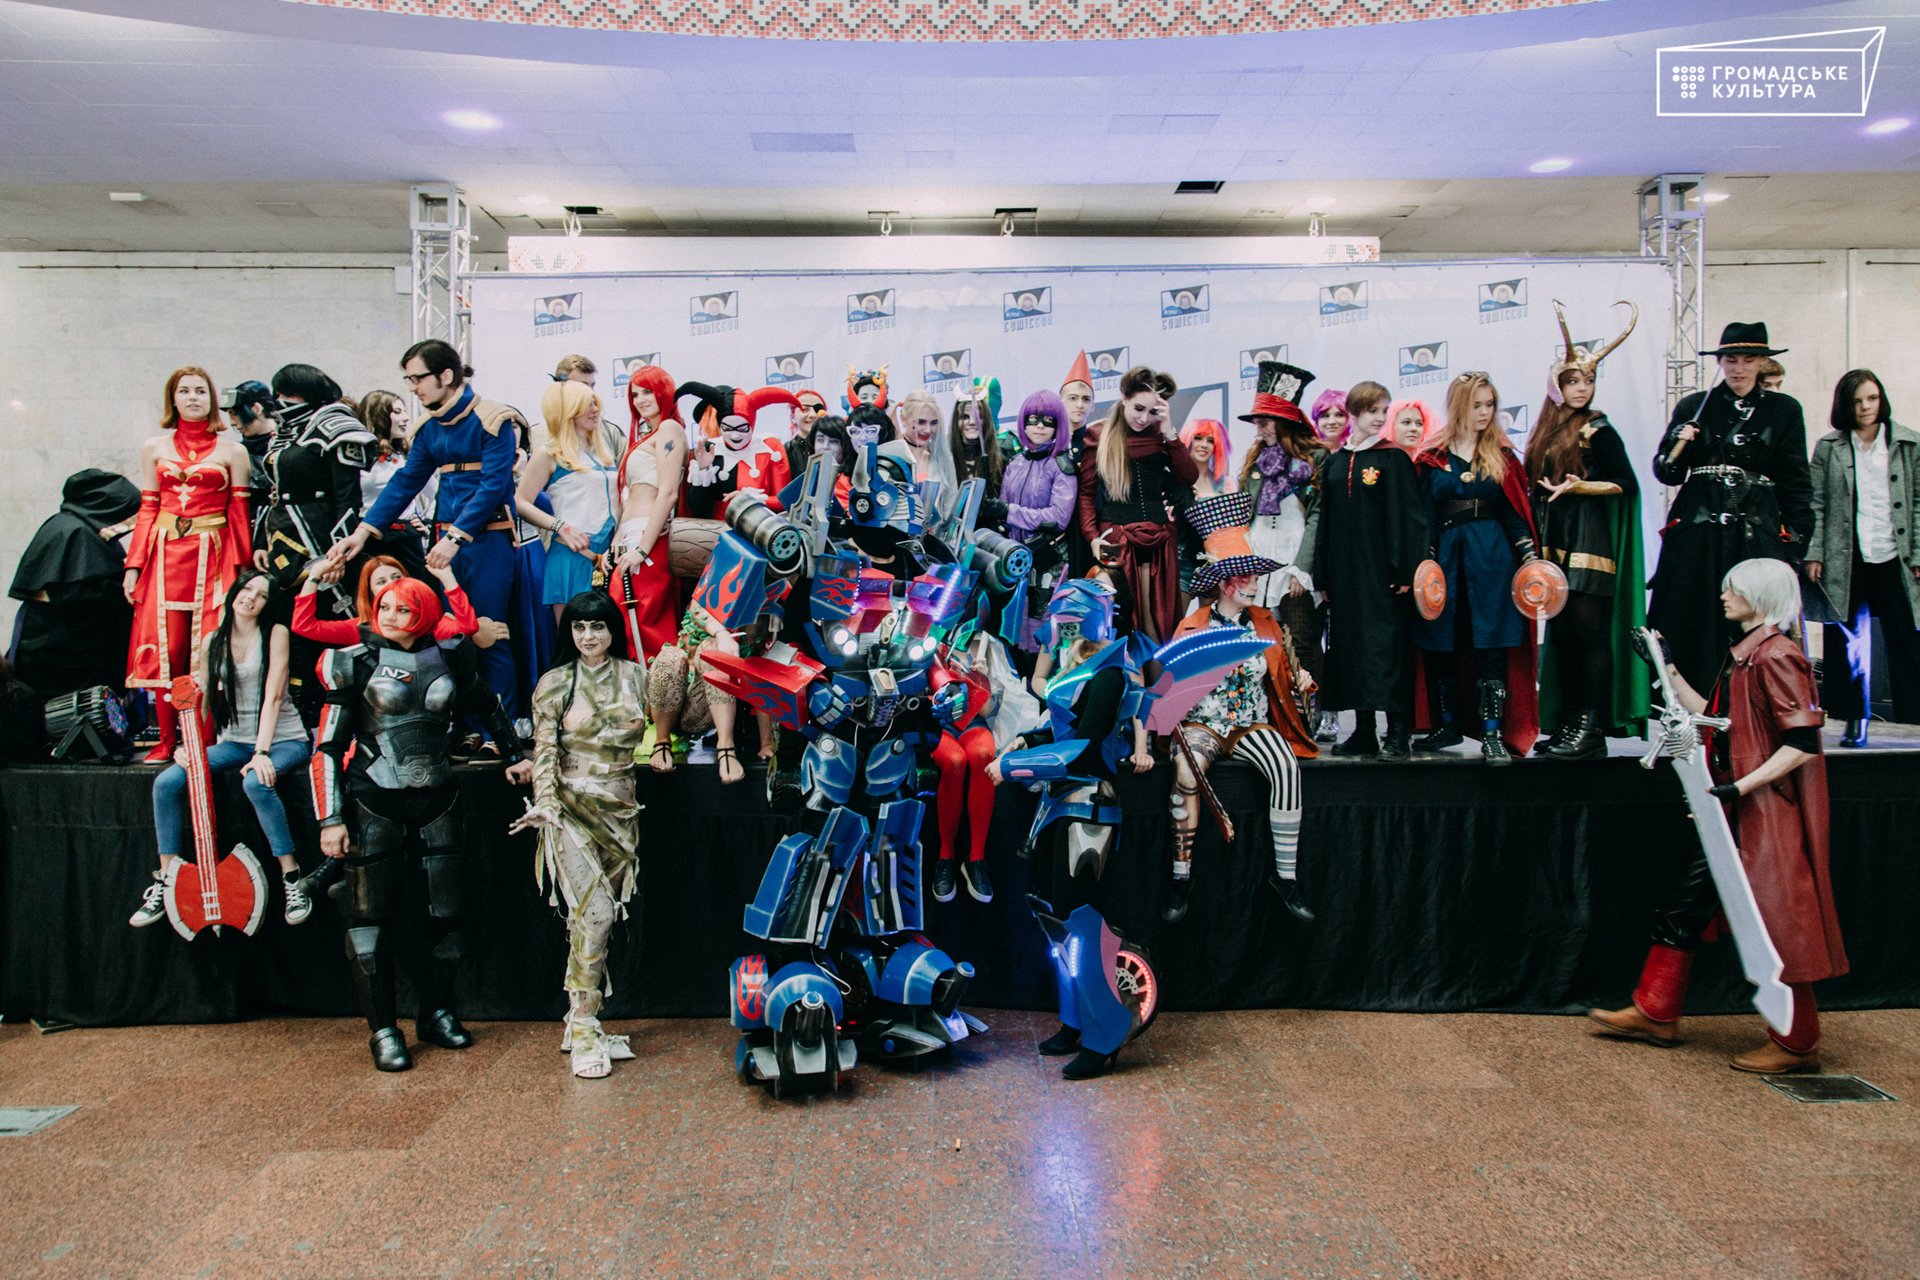 АТБетмен, феи и другие: опубликованы яркие фото и видео героев Comic Con в Киеве